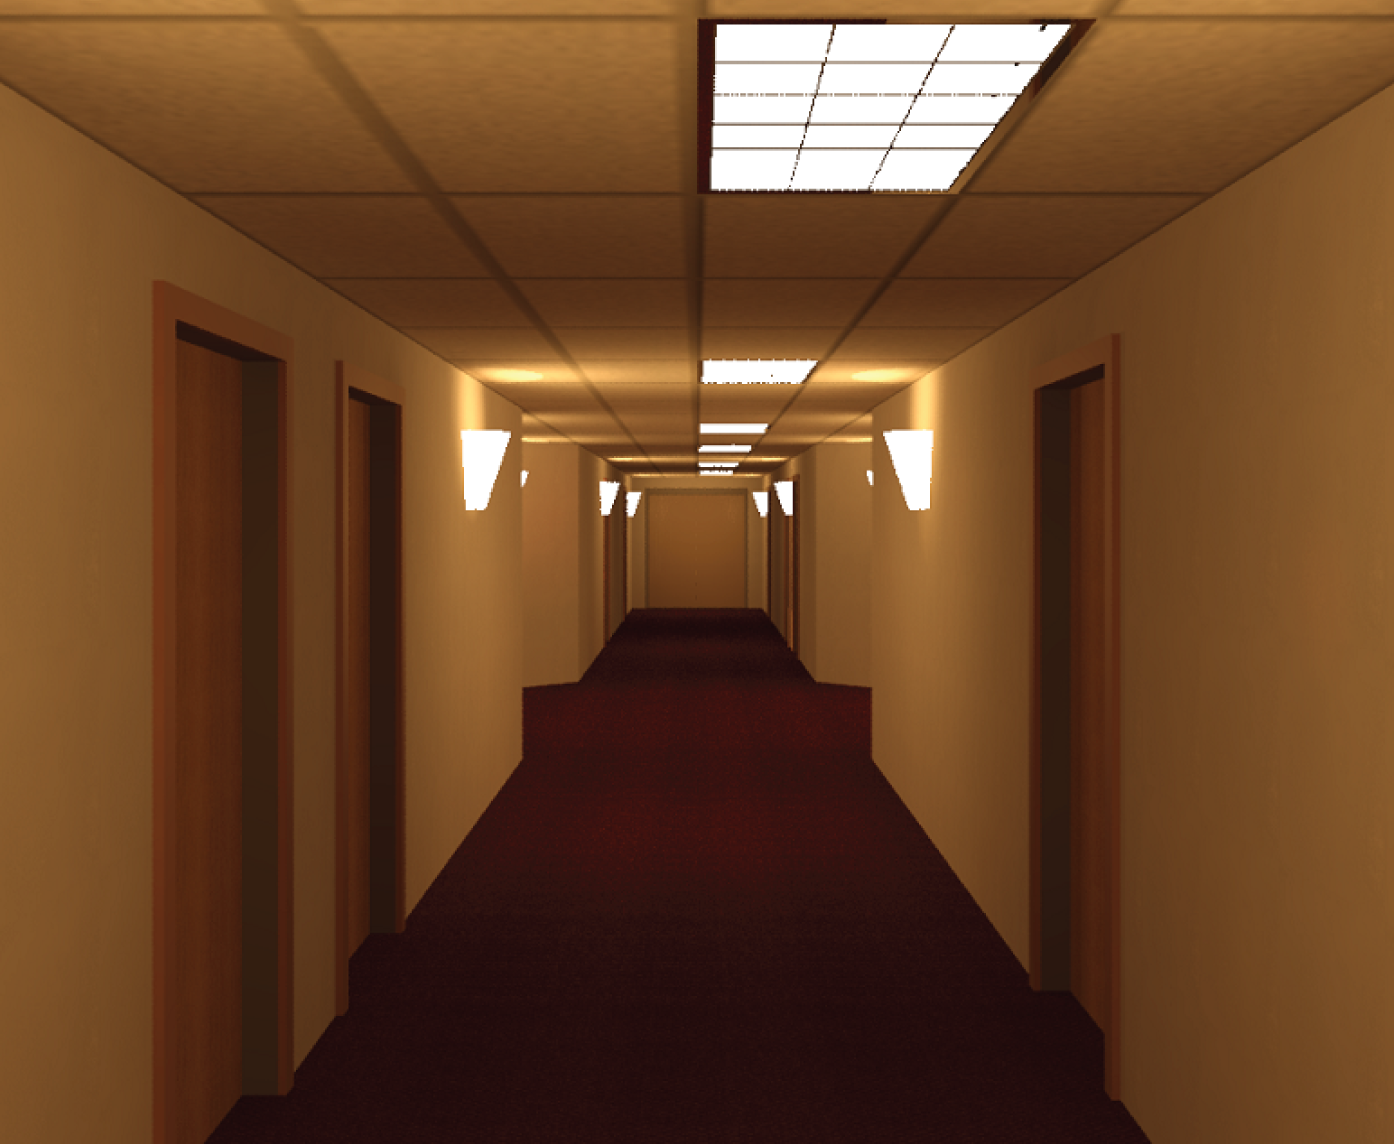 The corridor rendering